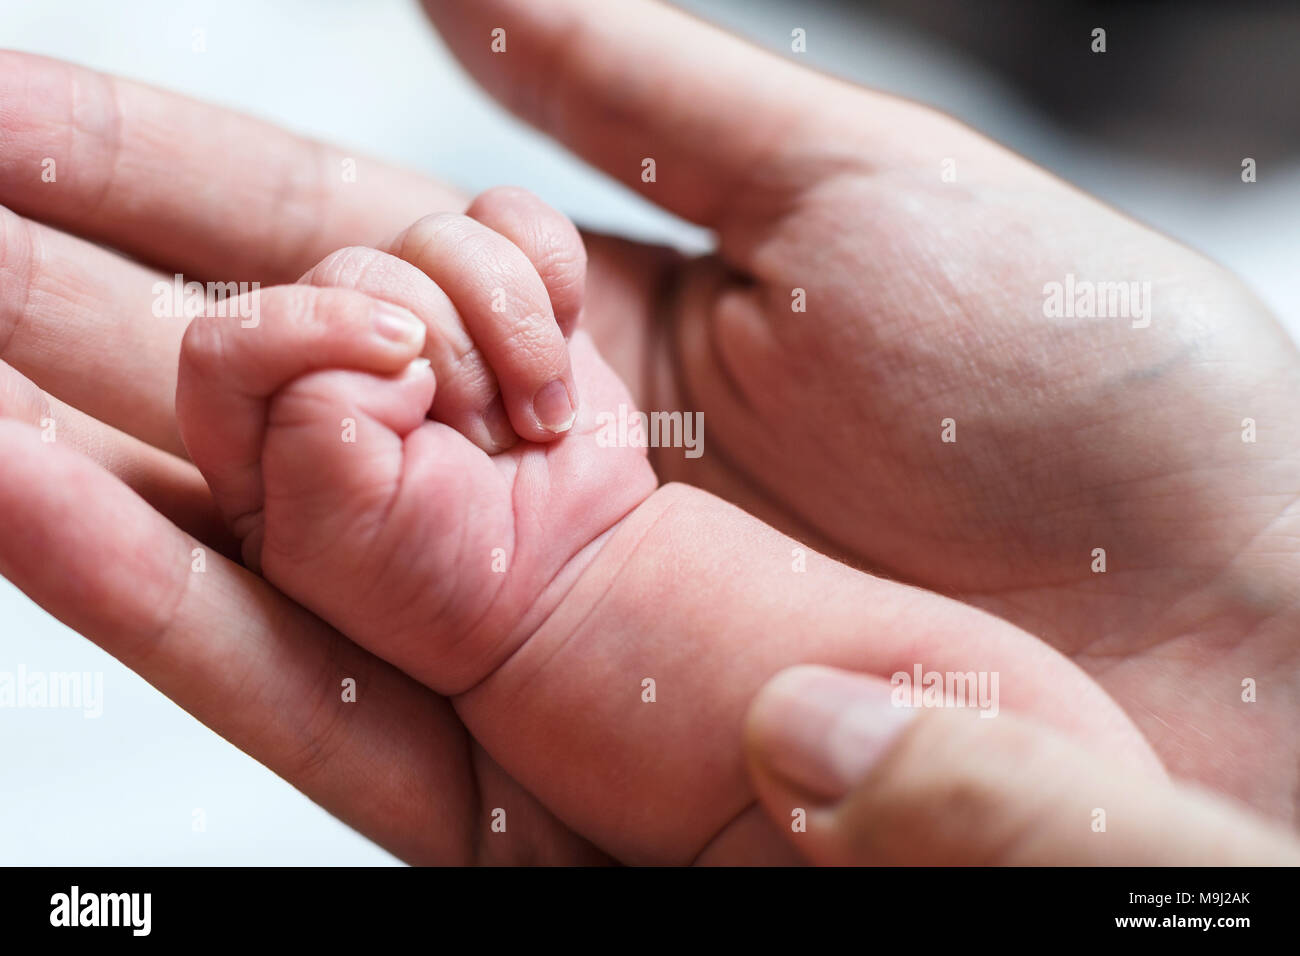 Female hand holding newborn baby's hand. Stock Photo